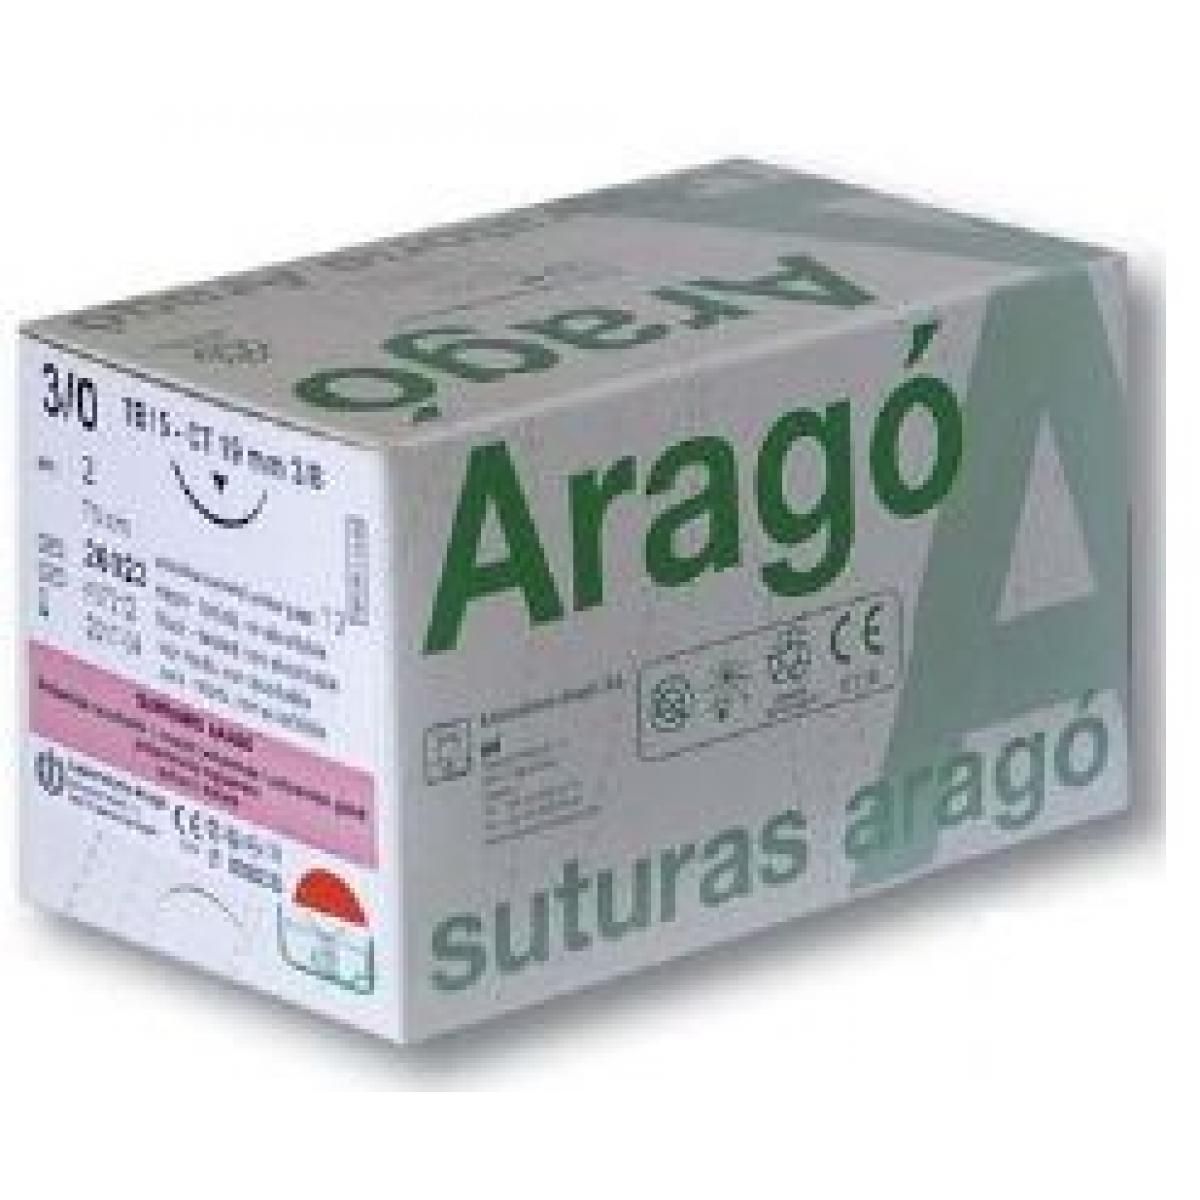 SUTURA ARAGO SUPRAMID NEGRO 5 0 TB 12 36U -